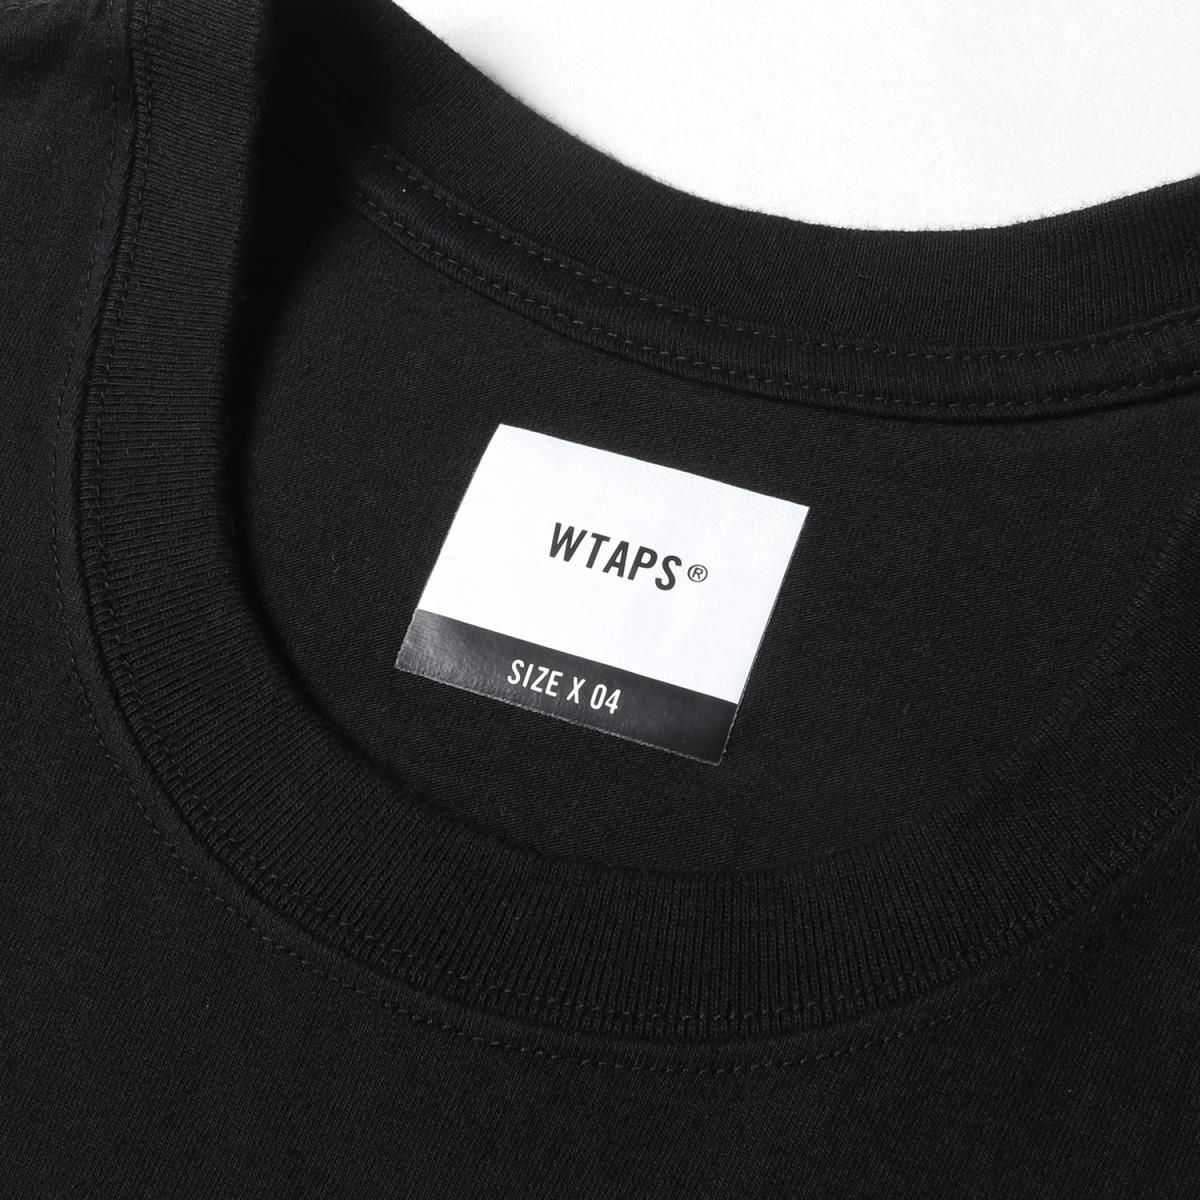 WTAPS ダブルタップス Tシャツ LONG LIVE WTAPSロゴ Tシャツ LLW 21SS ブラック XL  【メンズ】【美品】【中古】【K3136】 | ブランド古着のBEEGLE by Boo-Bee